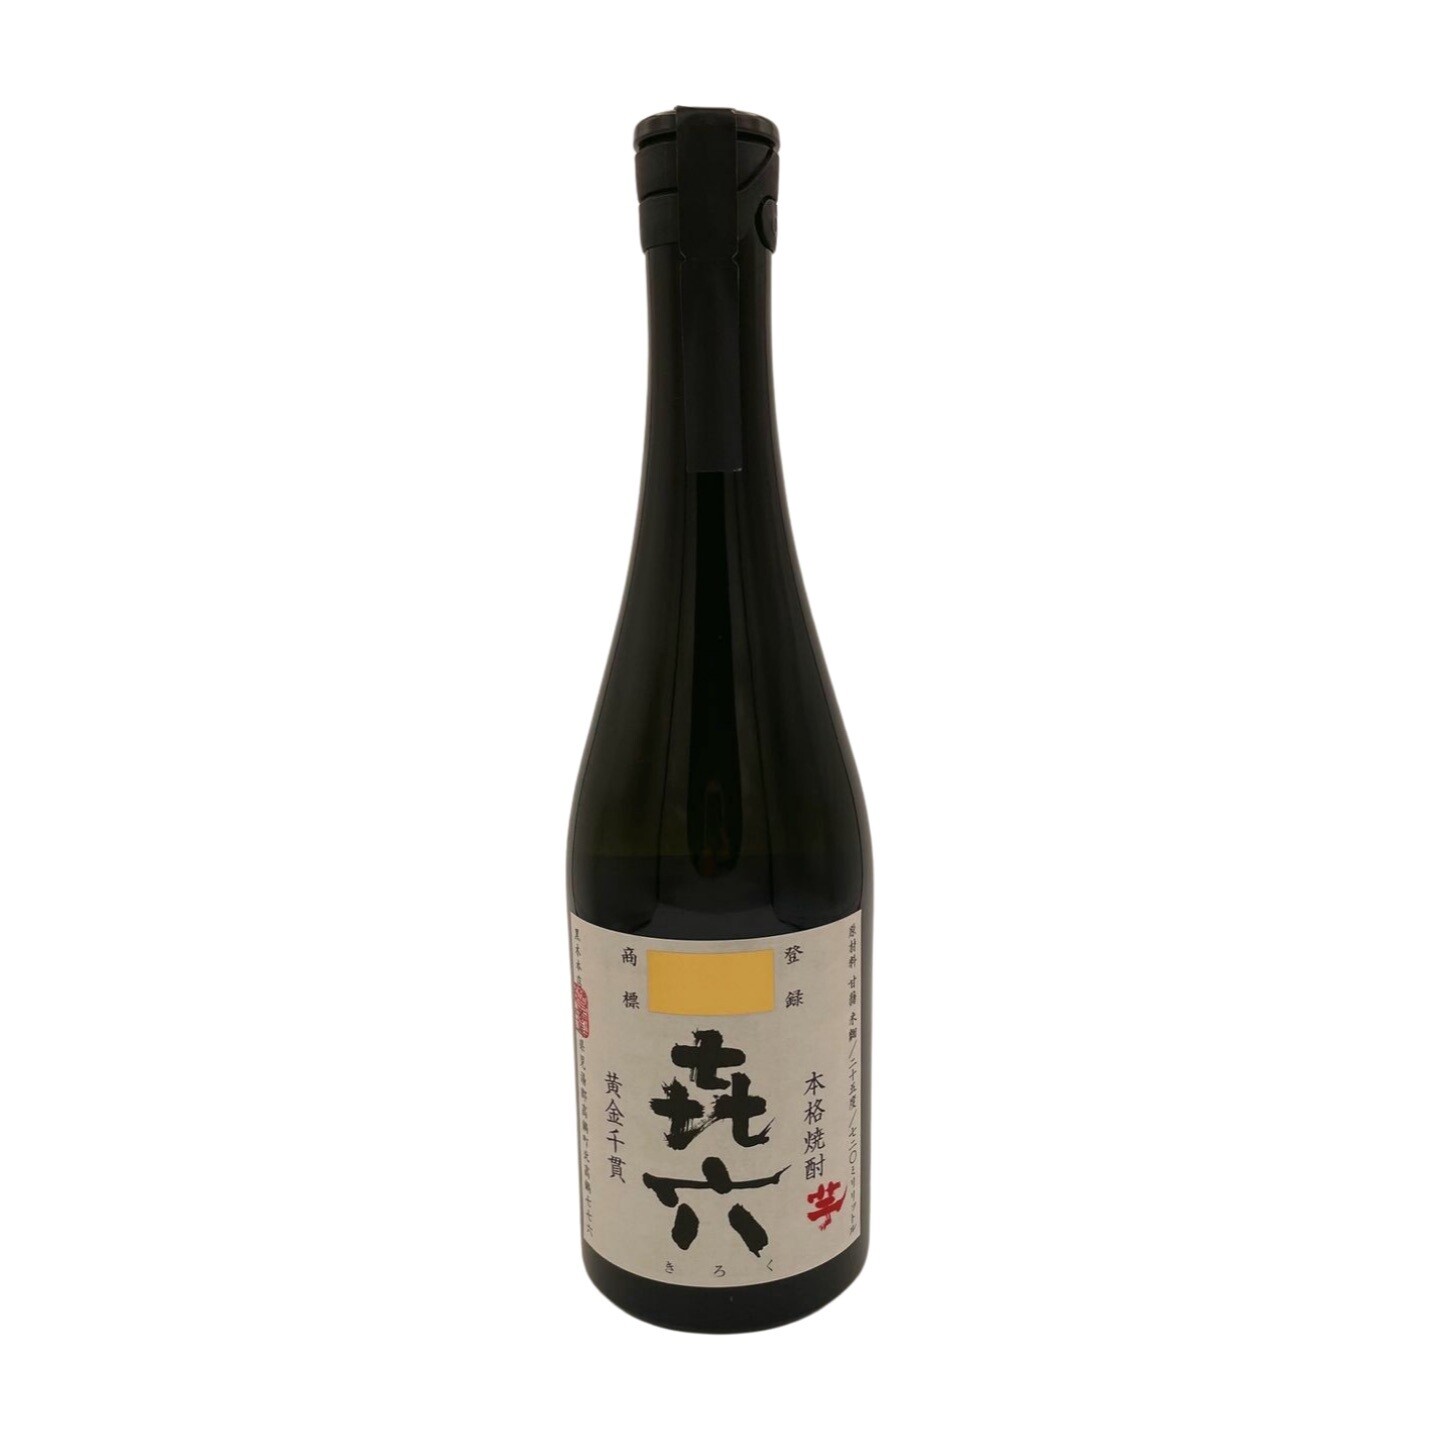 Kuroki Honten Distillery Kiroku  "Memory" Honkaku Imo Shochu 25%